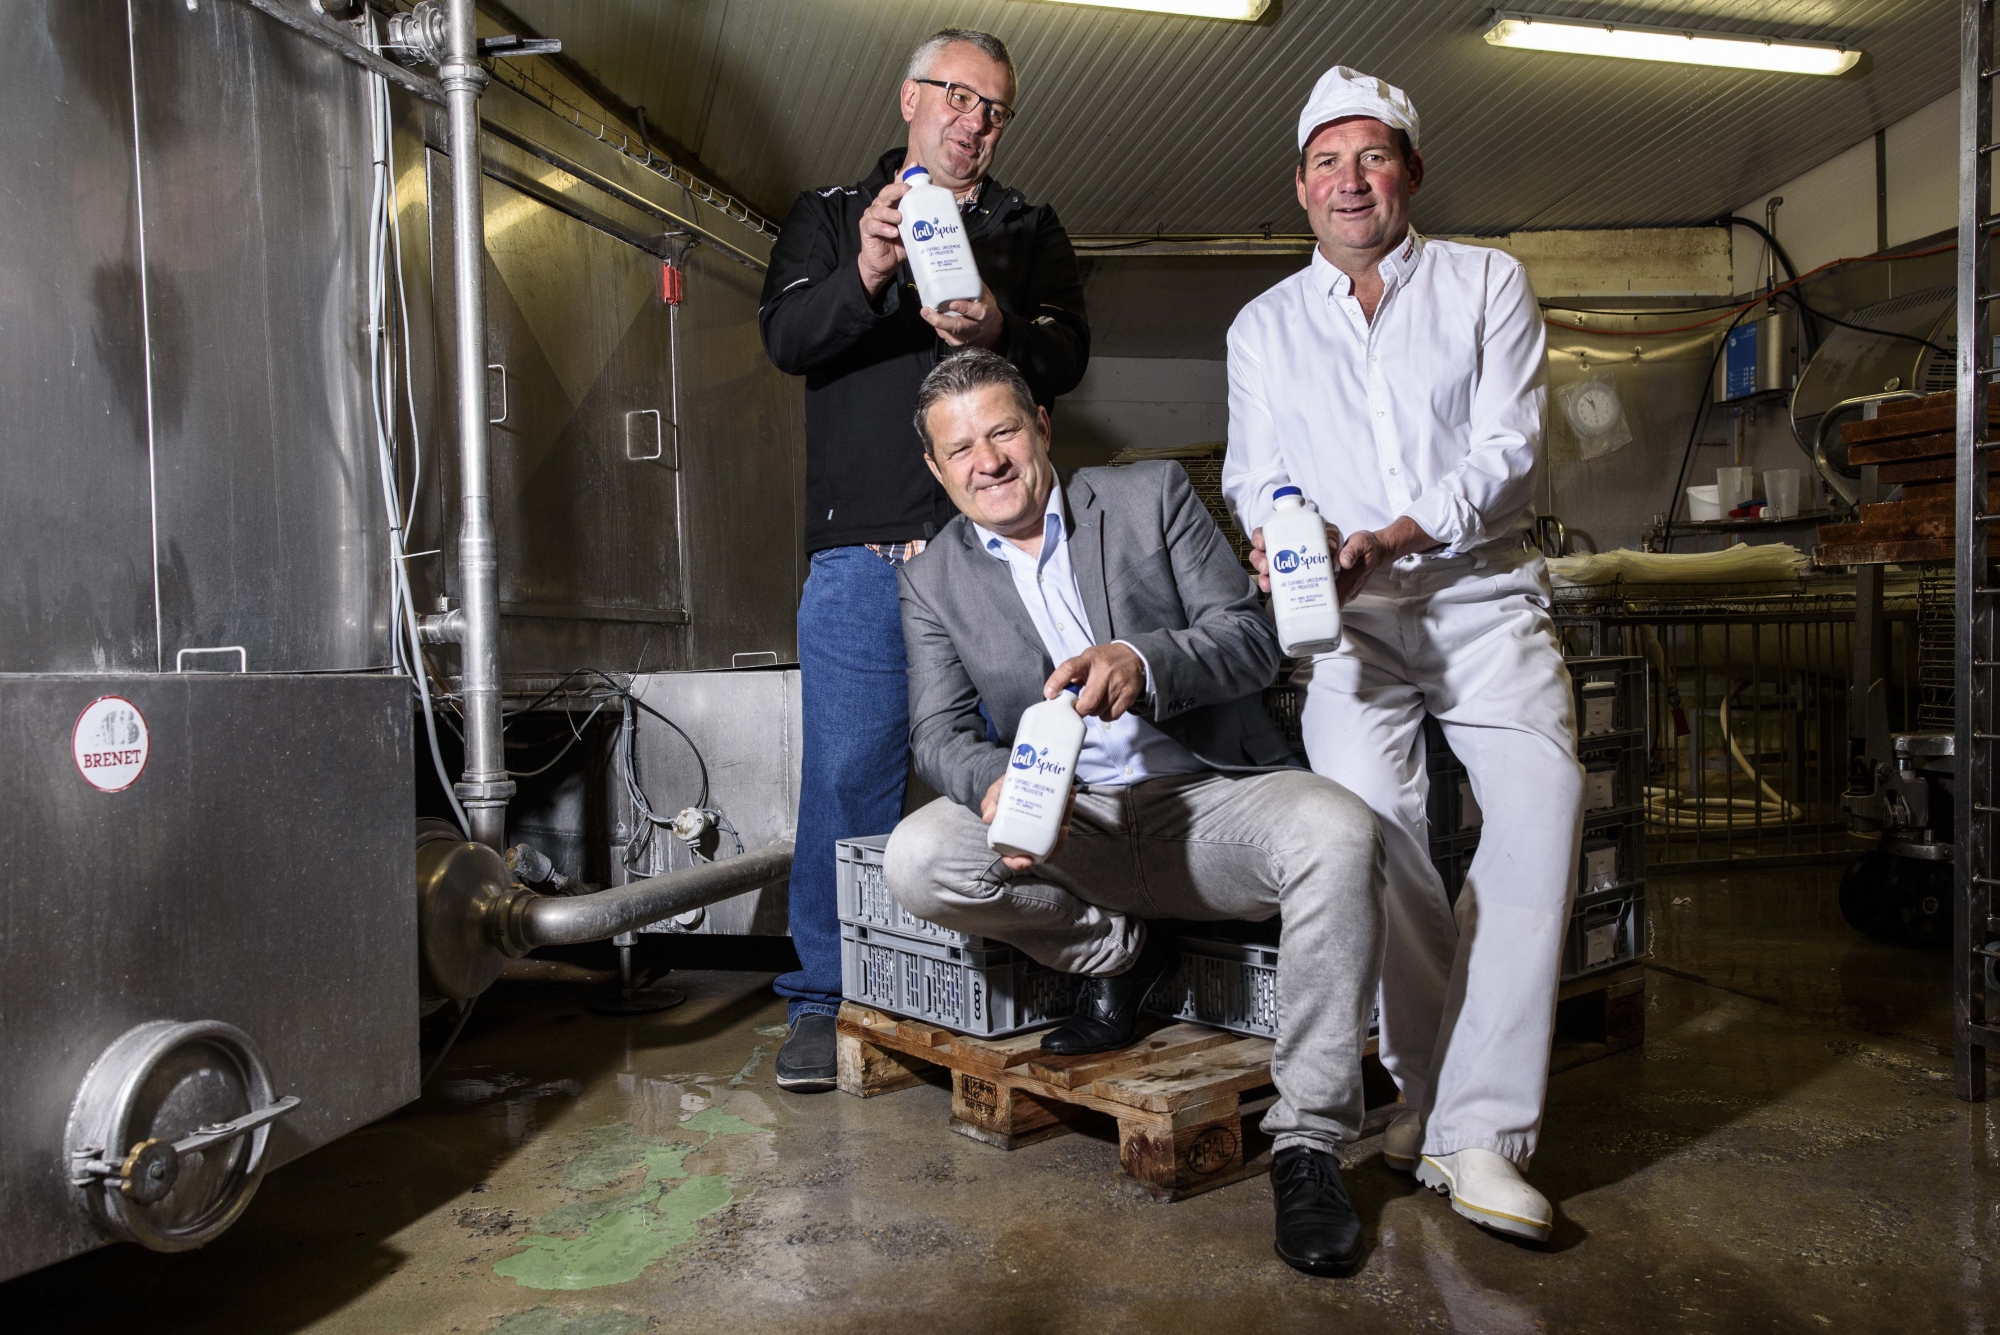 Pierre-Alain Urfer (initiateur du projet), Guy de Charrière (président du groupement des producteurs de lait de Morges et environs) et Serge André (fromager à Romanel-sur-Morges), lors du lancement de Laitspoir en mai 2018.